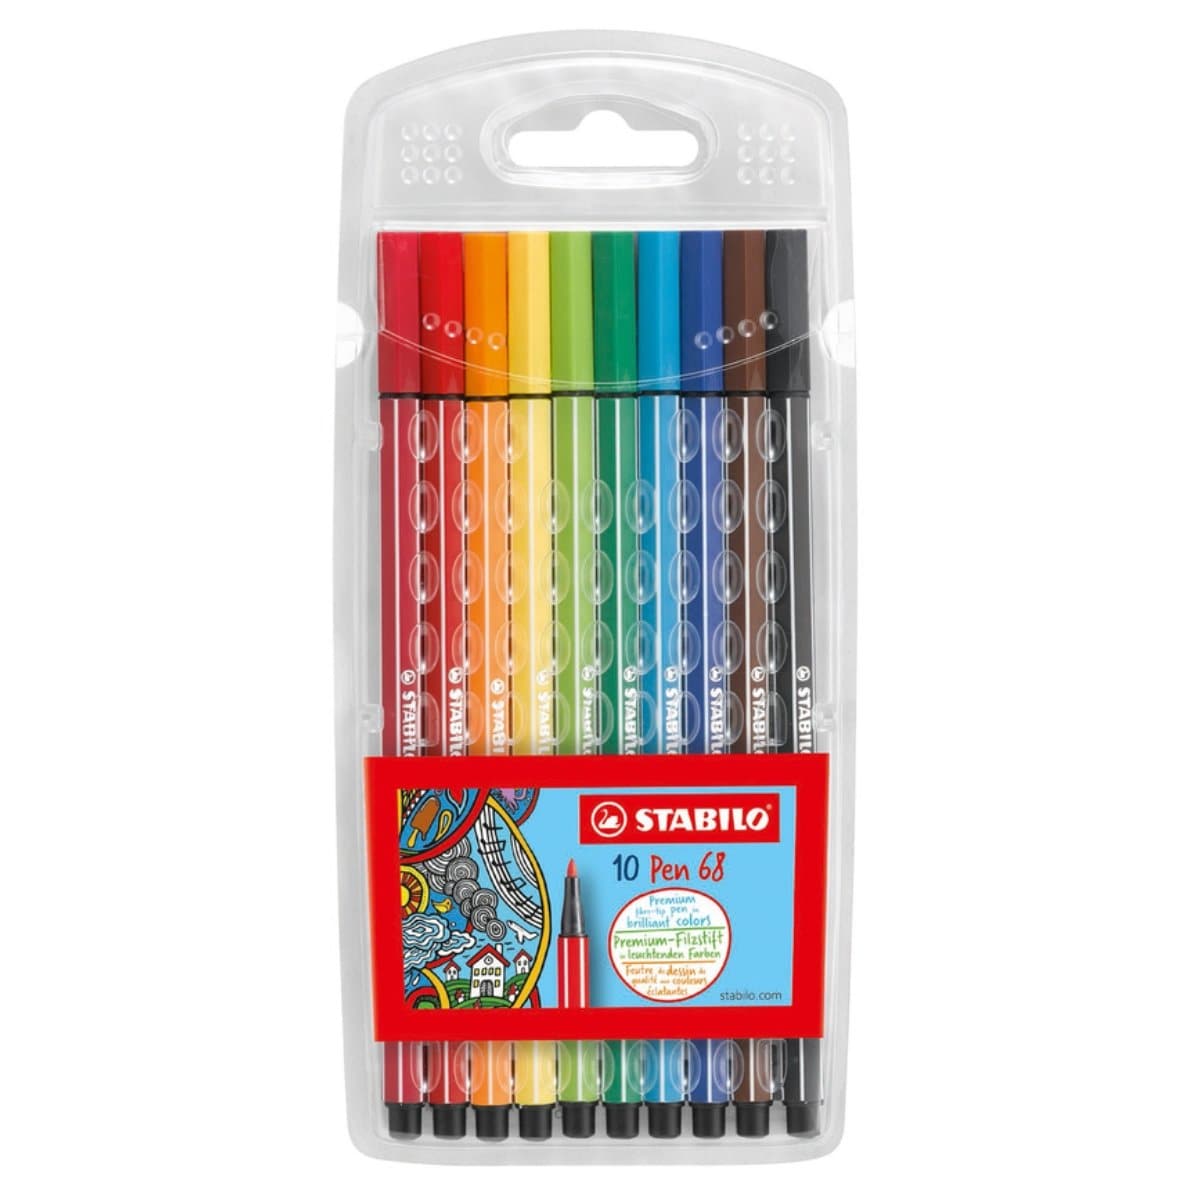 Stabilo Pen 68 Color Fibre-Tip Pen, 1mm, 10/pack